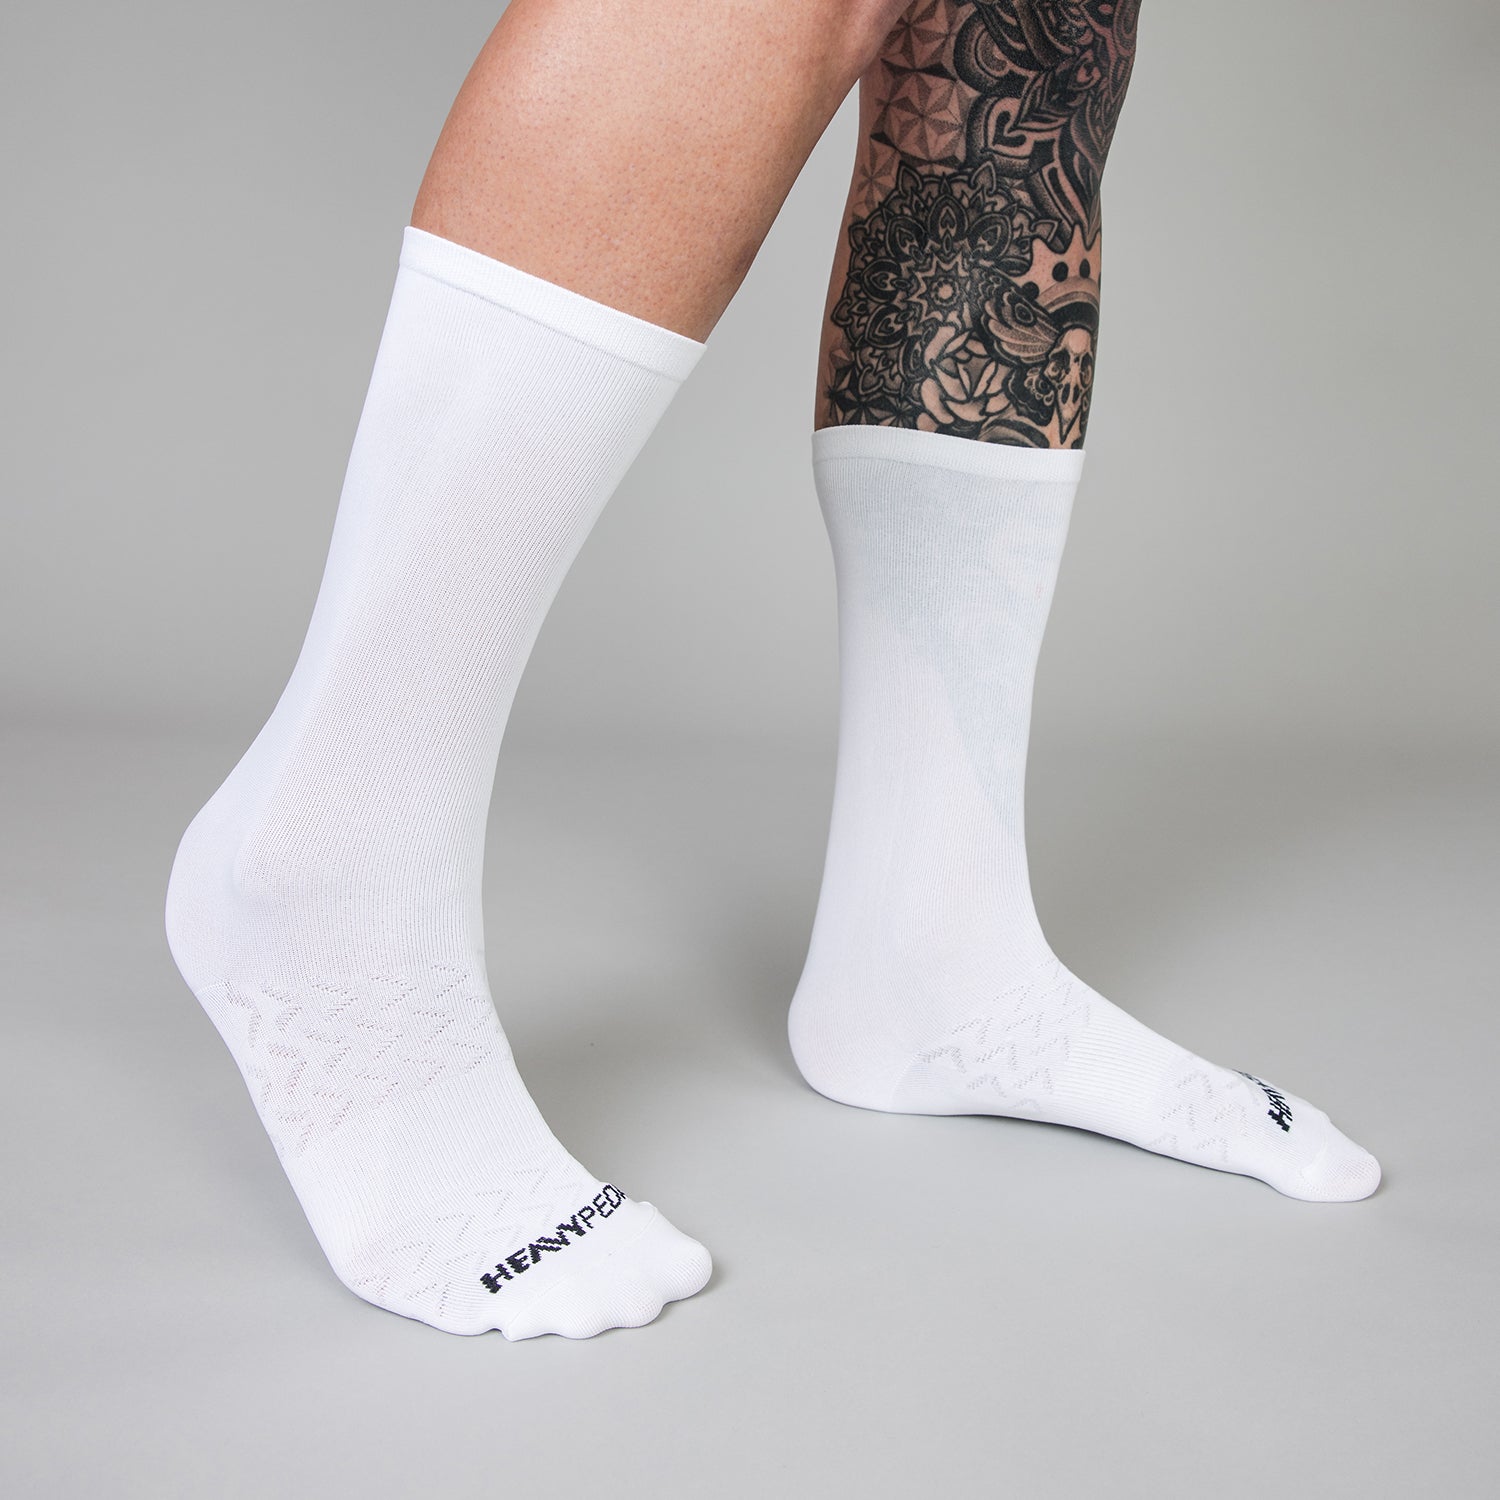 Stealth White Socks 1 Pack